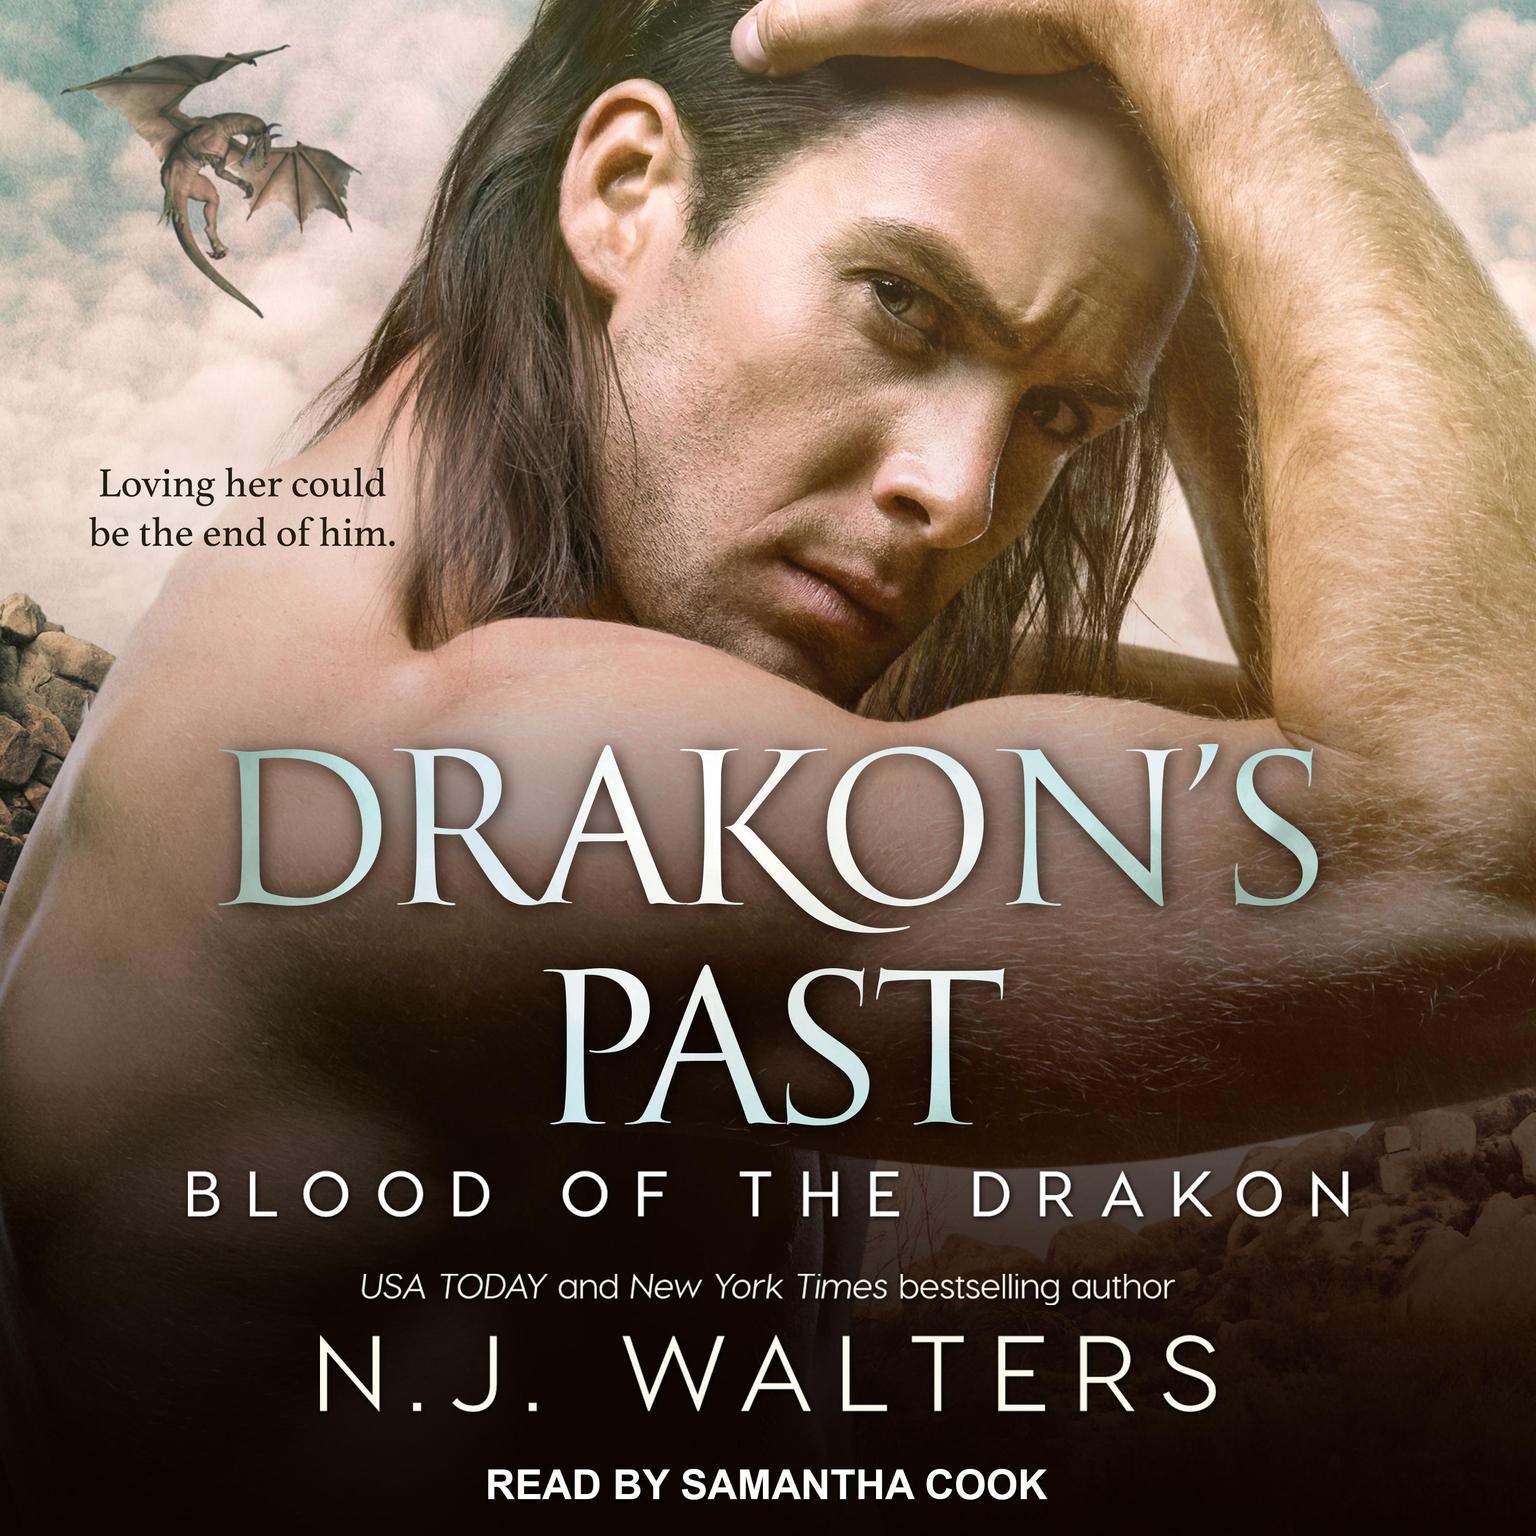 Drakon’s Past Audiobook, by N.J. Walters